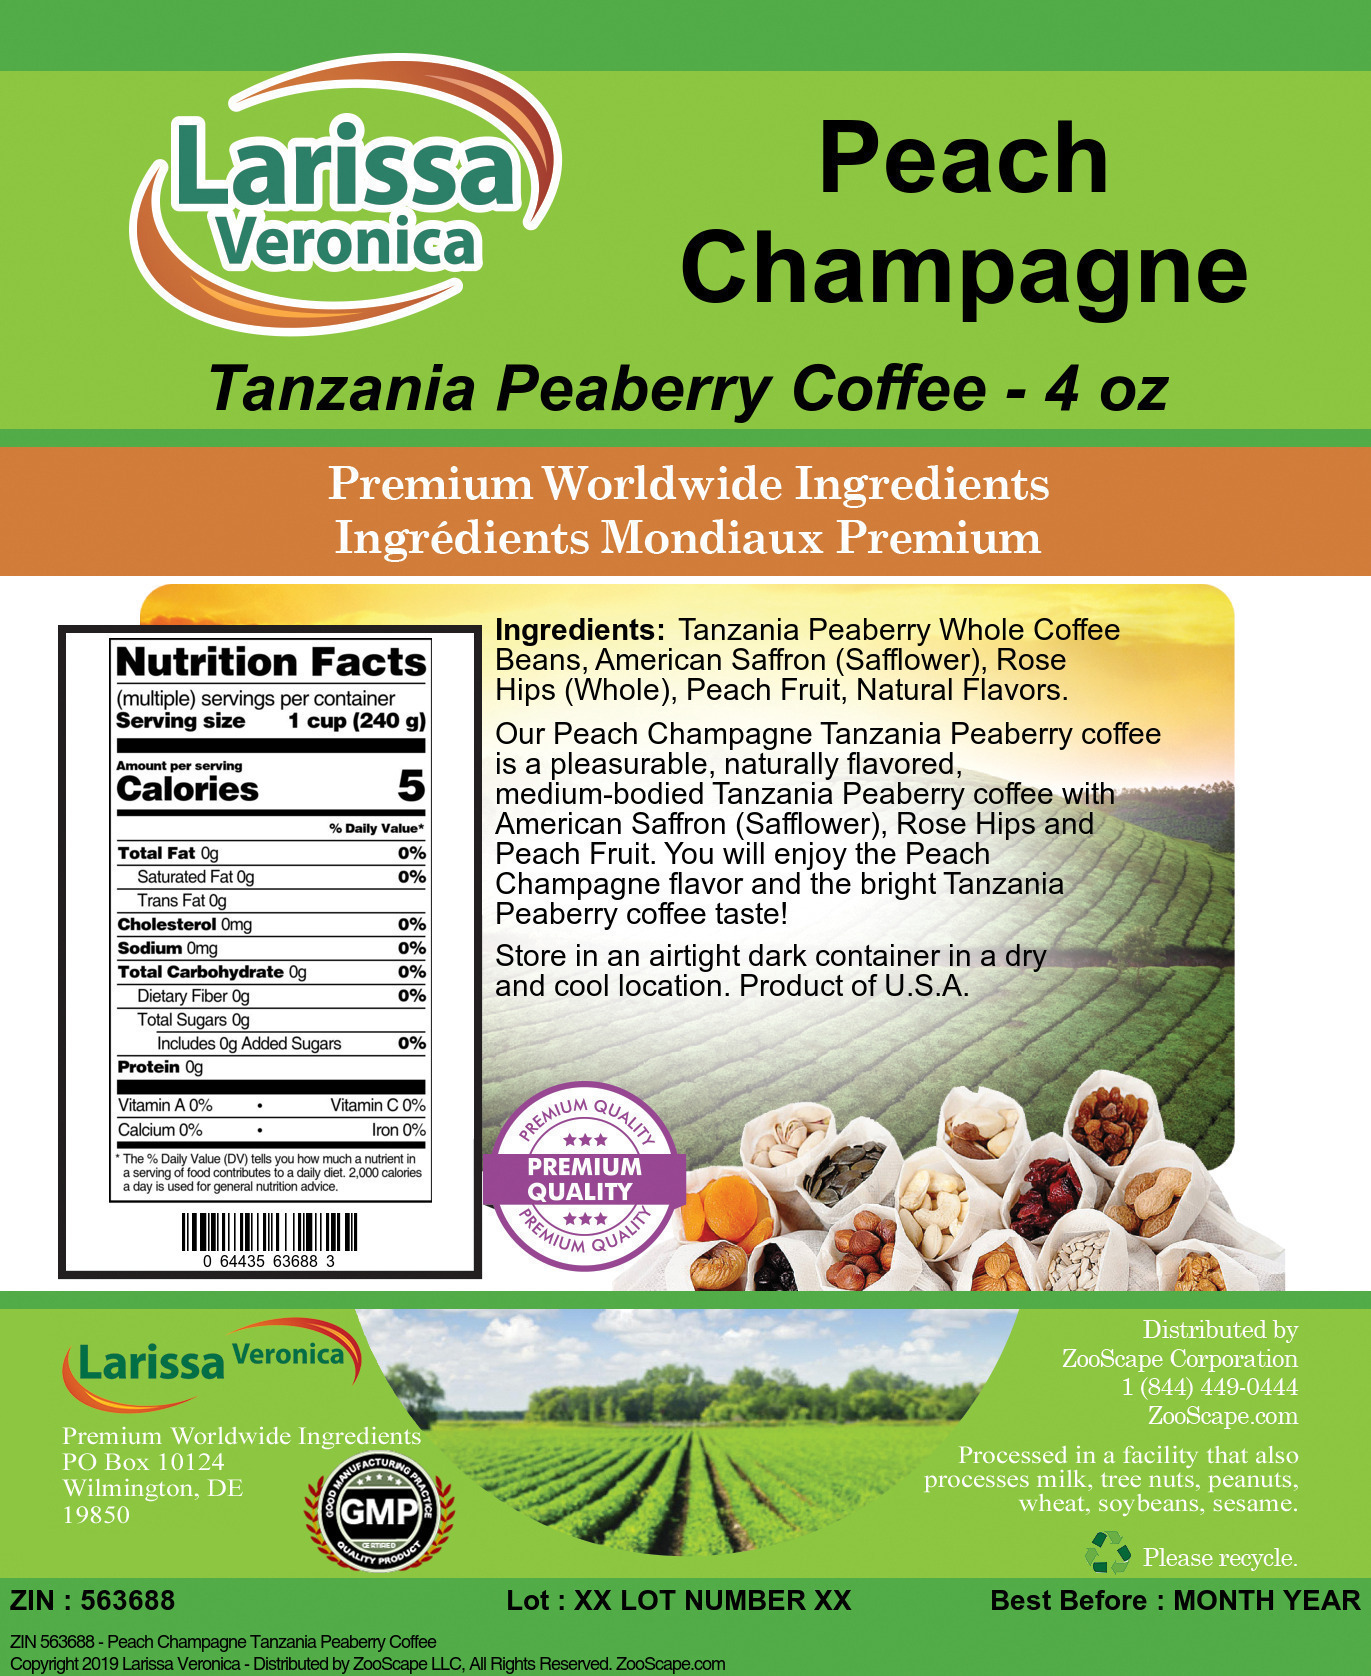 Peach Champagne Tanzania Peaberry Coffee - Label